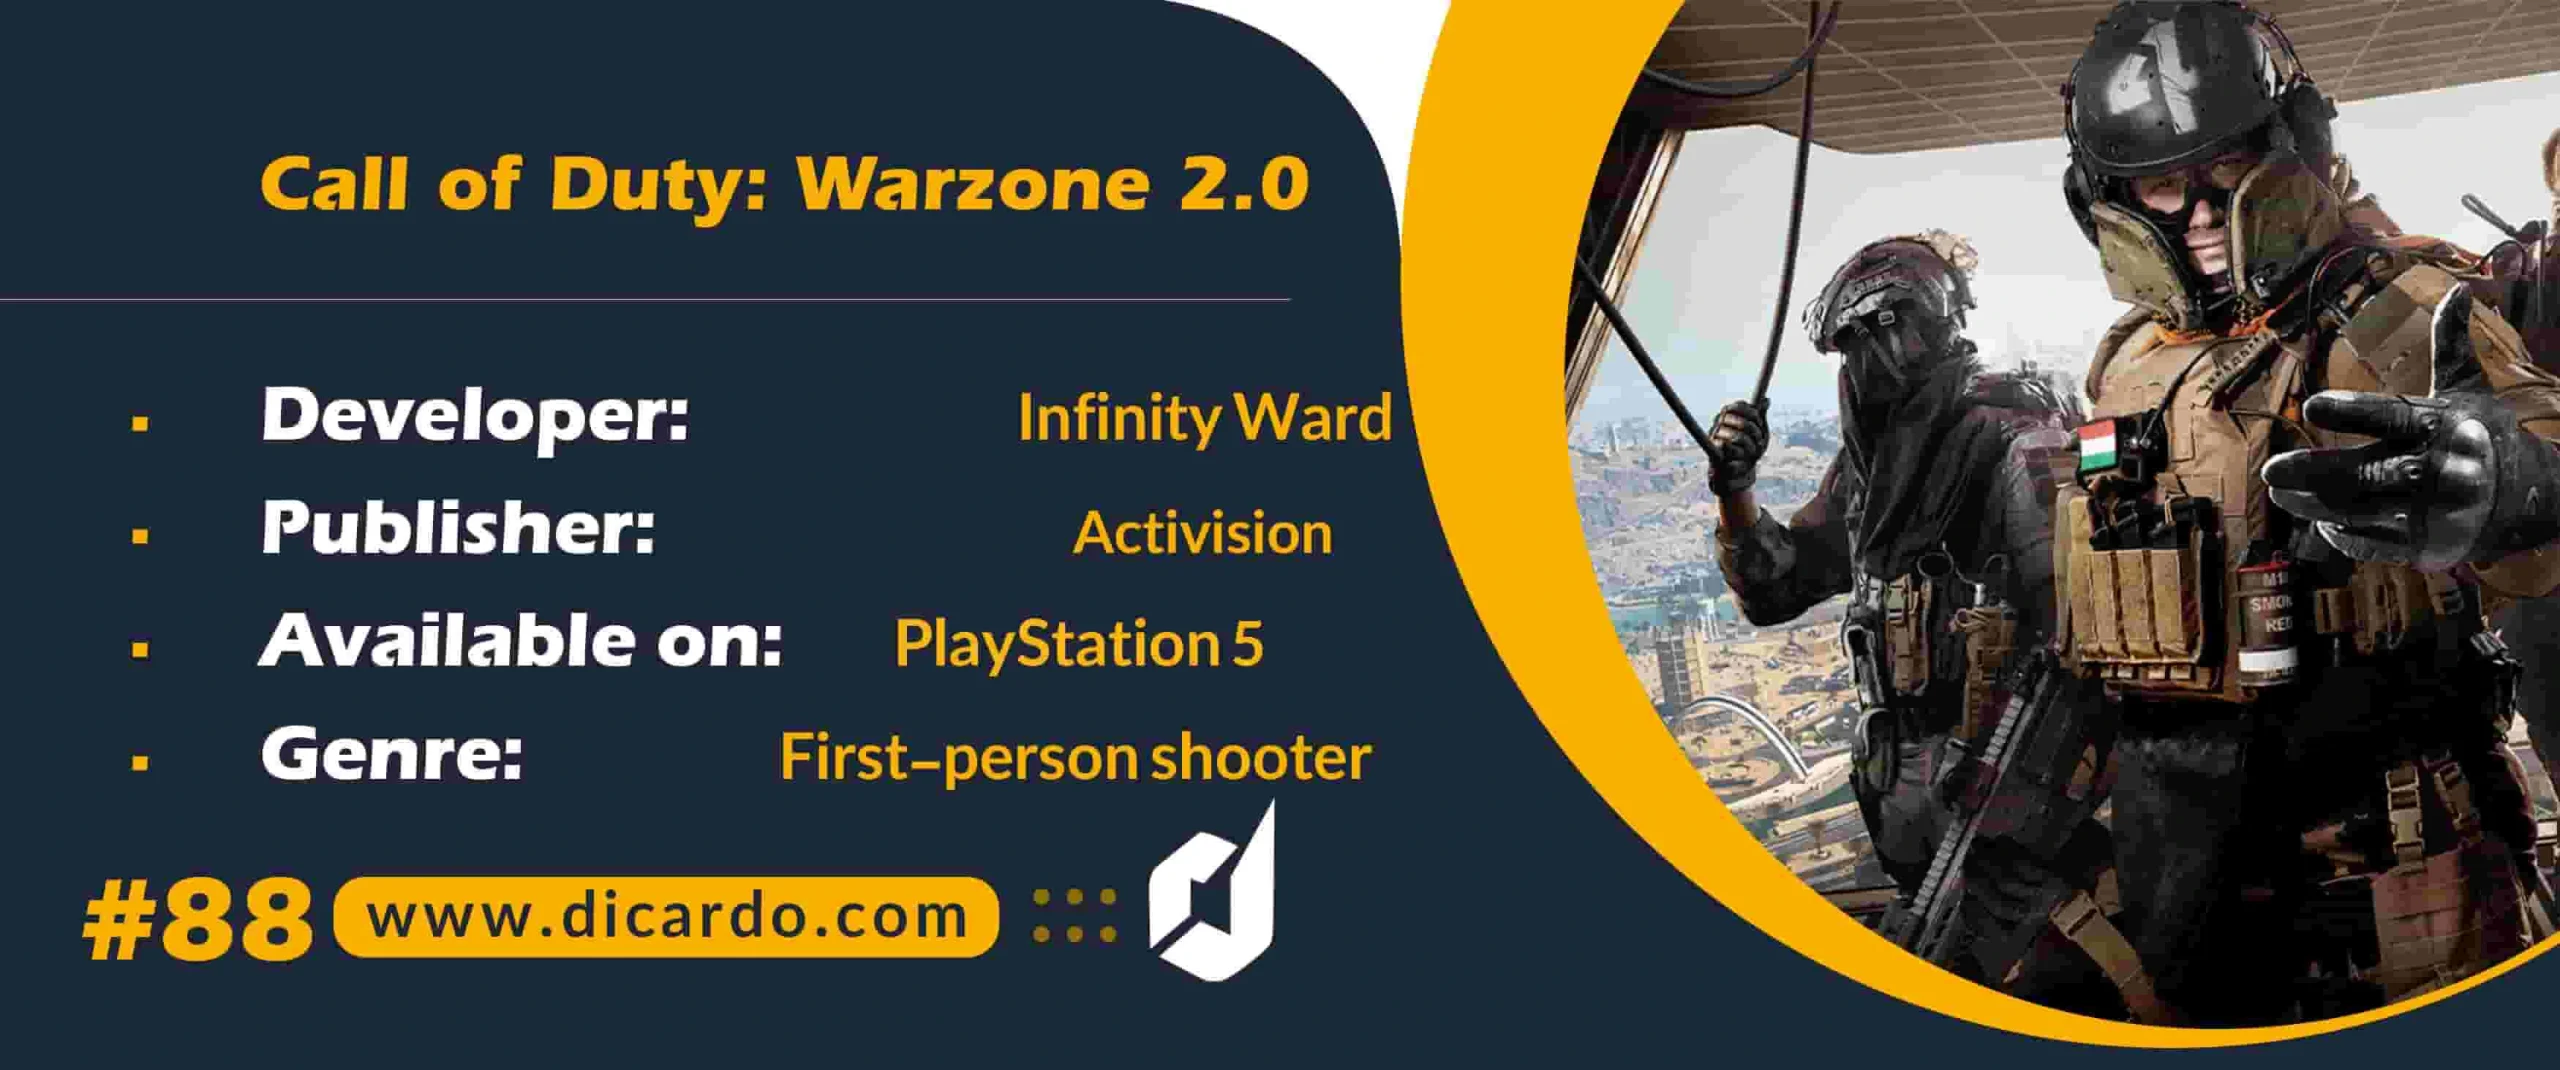 #88 کالاف دیوتی وارزون Call of Duty: Warzone 2.0